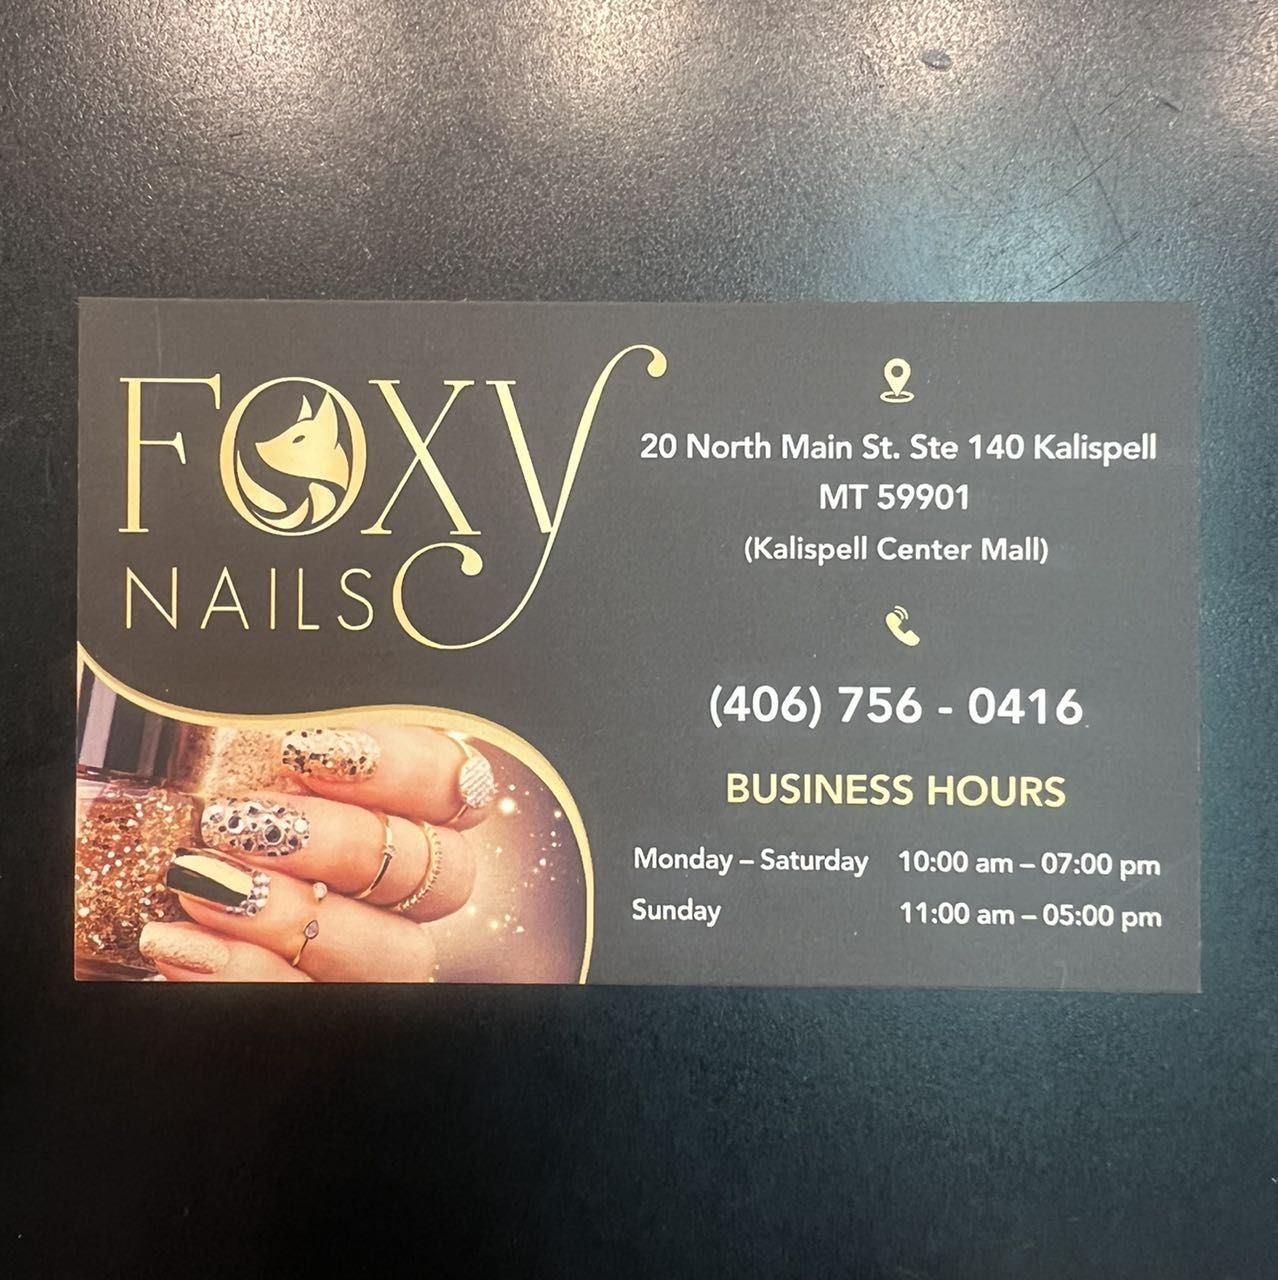 FOXY NAILS  425 Photos  140 Reviews  10208 N Division St Spokane  Washington  Nail Salons  Phone Number  Yelp